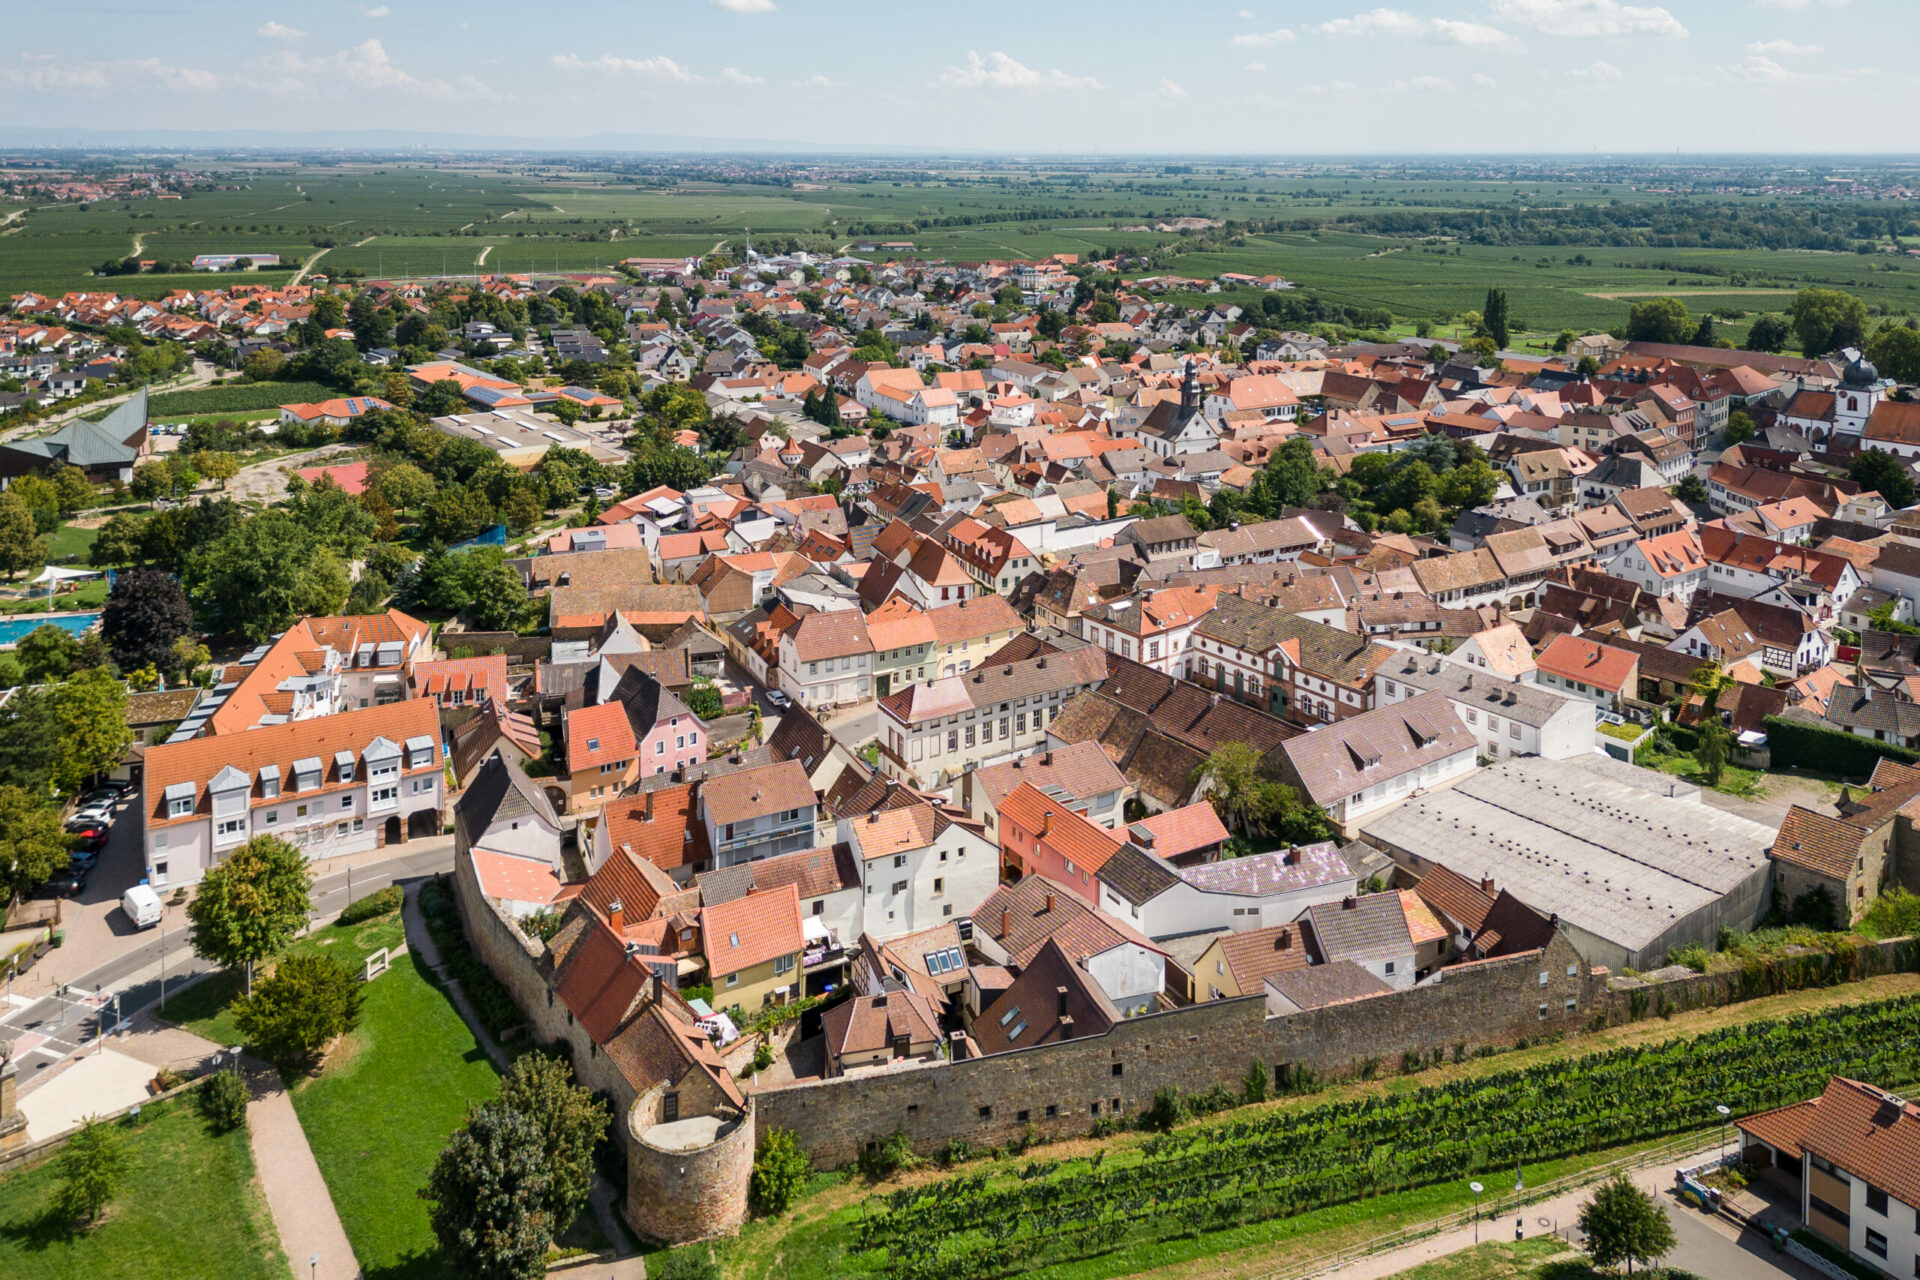 Luftaufnahme eines malerischen europäischen Dorfes, Wachenheim an der Weinstraße, mit Ziegeldächern und umgeben von üppigen Feldern und Weinbergen an einem sonnigen Tag.